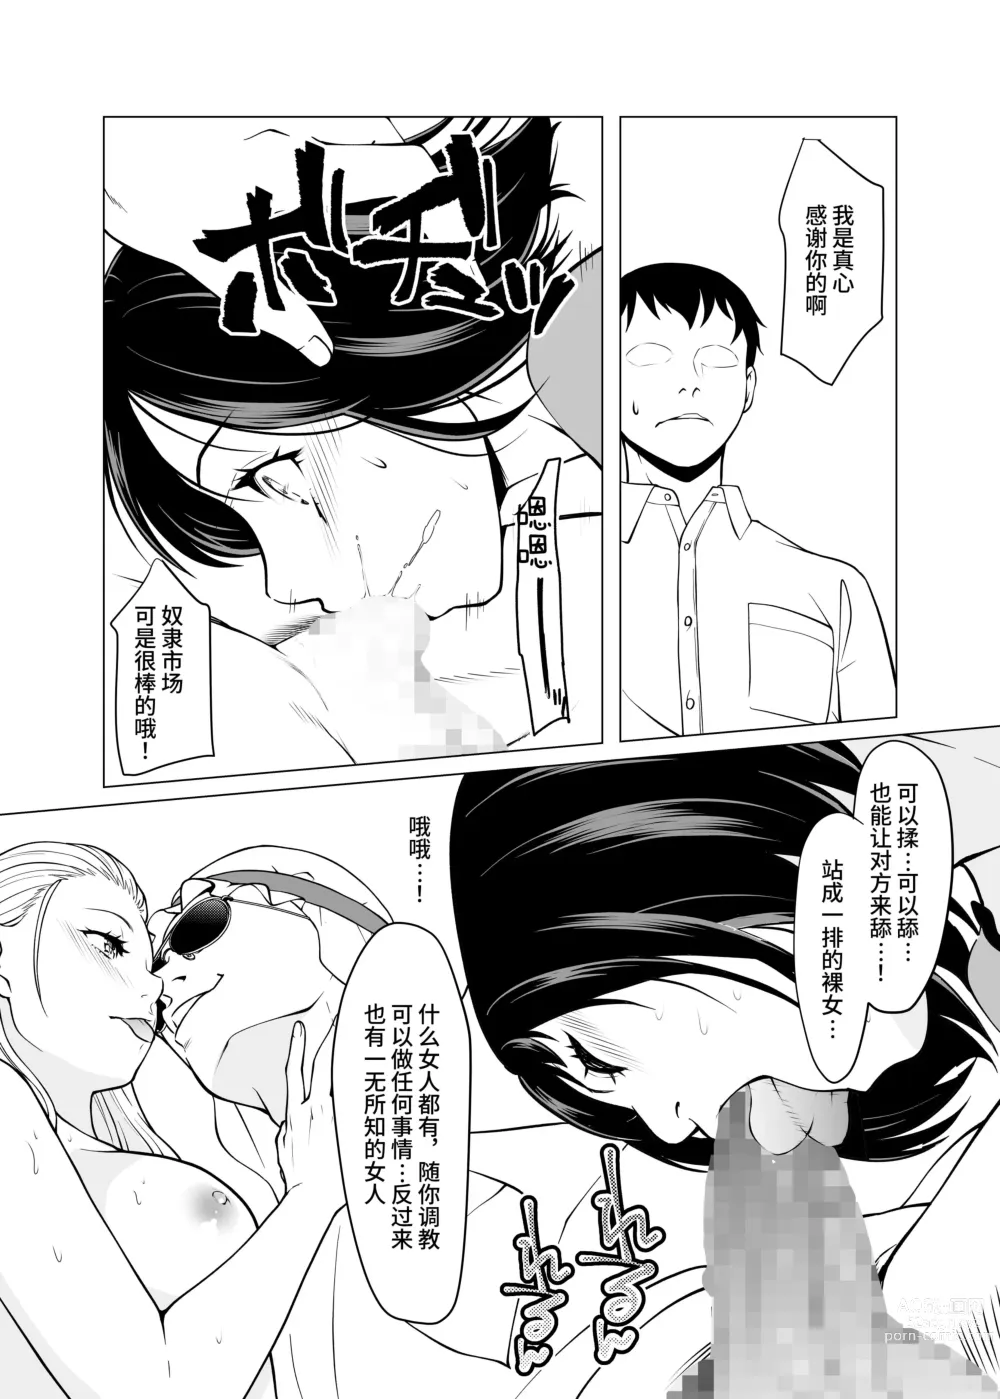 Page 7 of doujinshi 奴隶市场的真实情况～东京国○展示场上真实存在于现代日本的淫荡阴暗面～